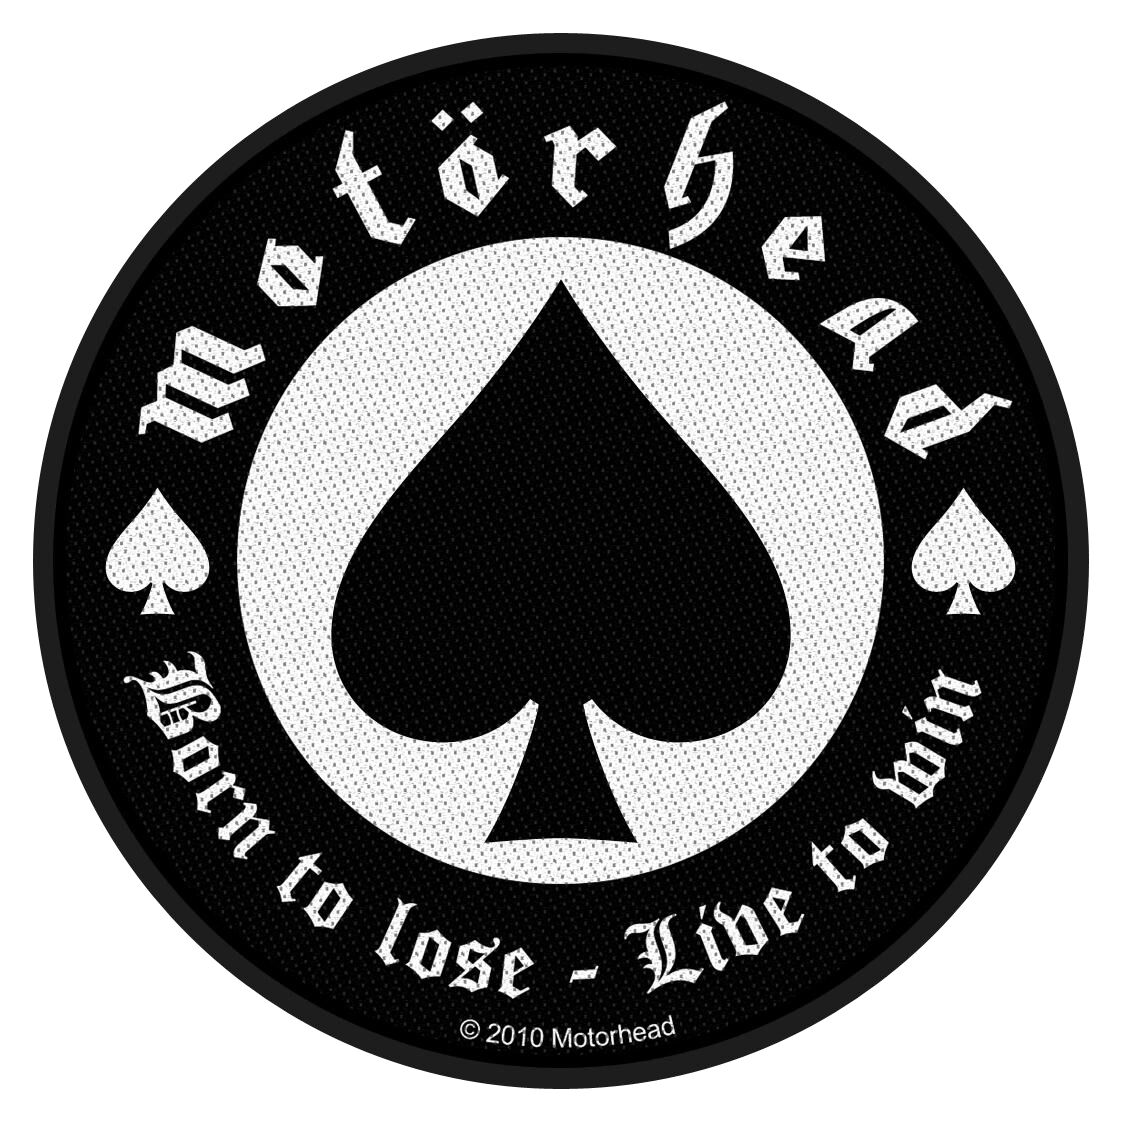 Motörhead Patch - Born To Lose - schwarz/weiß  - Lizenziertes Merchandise!